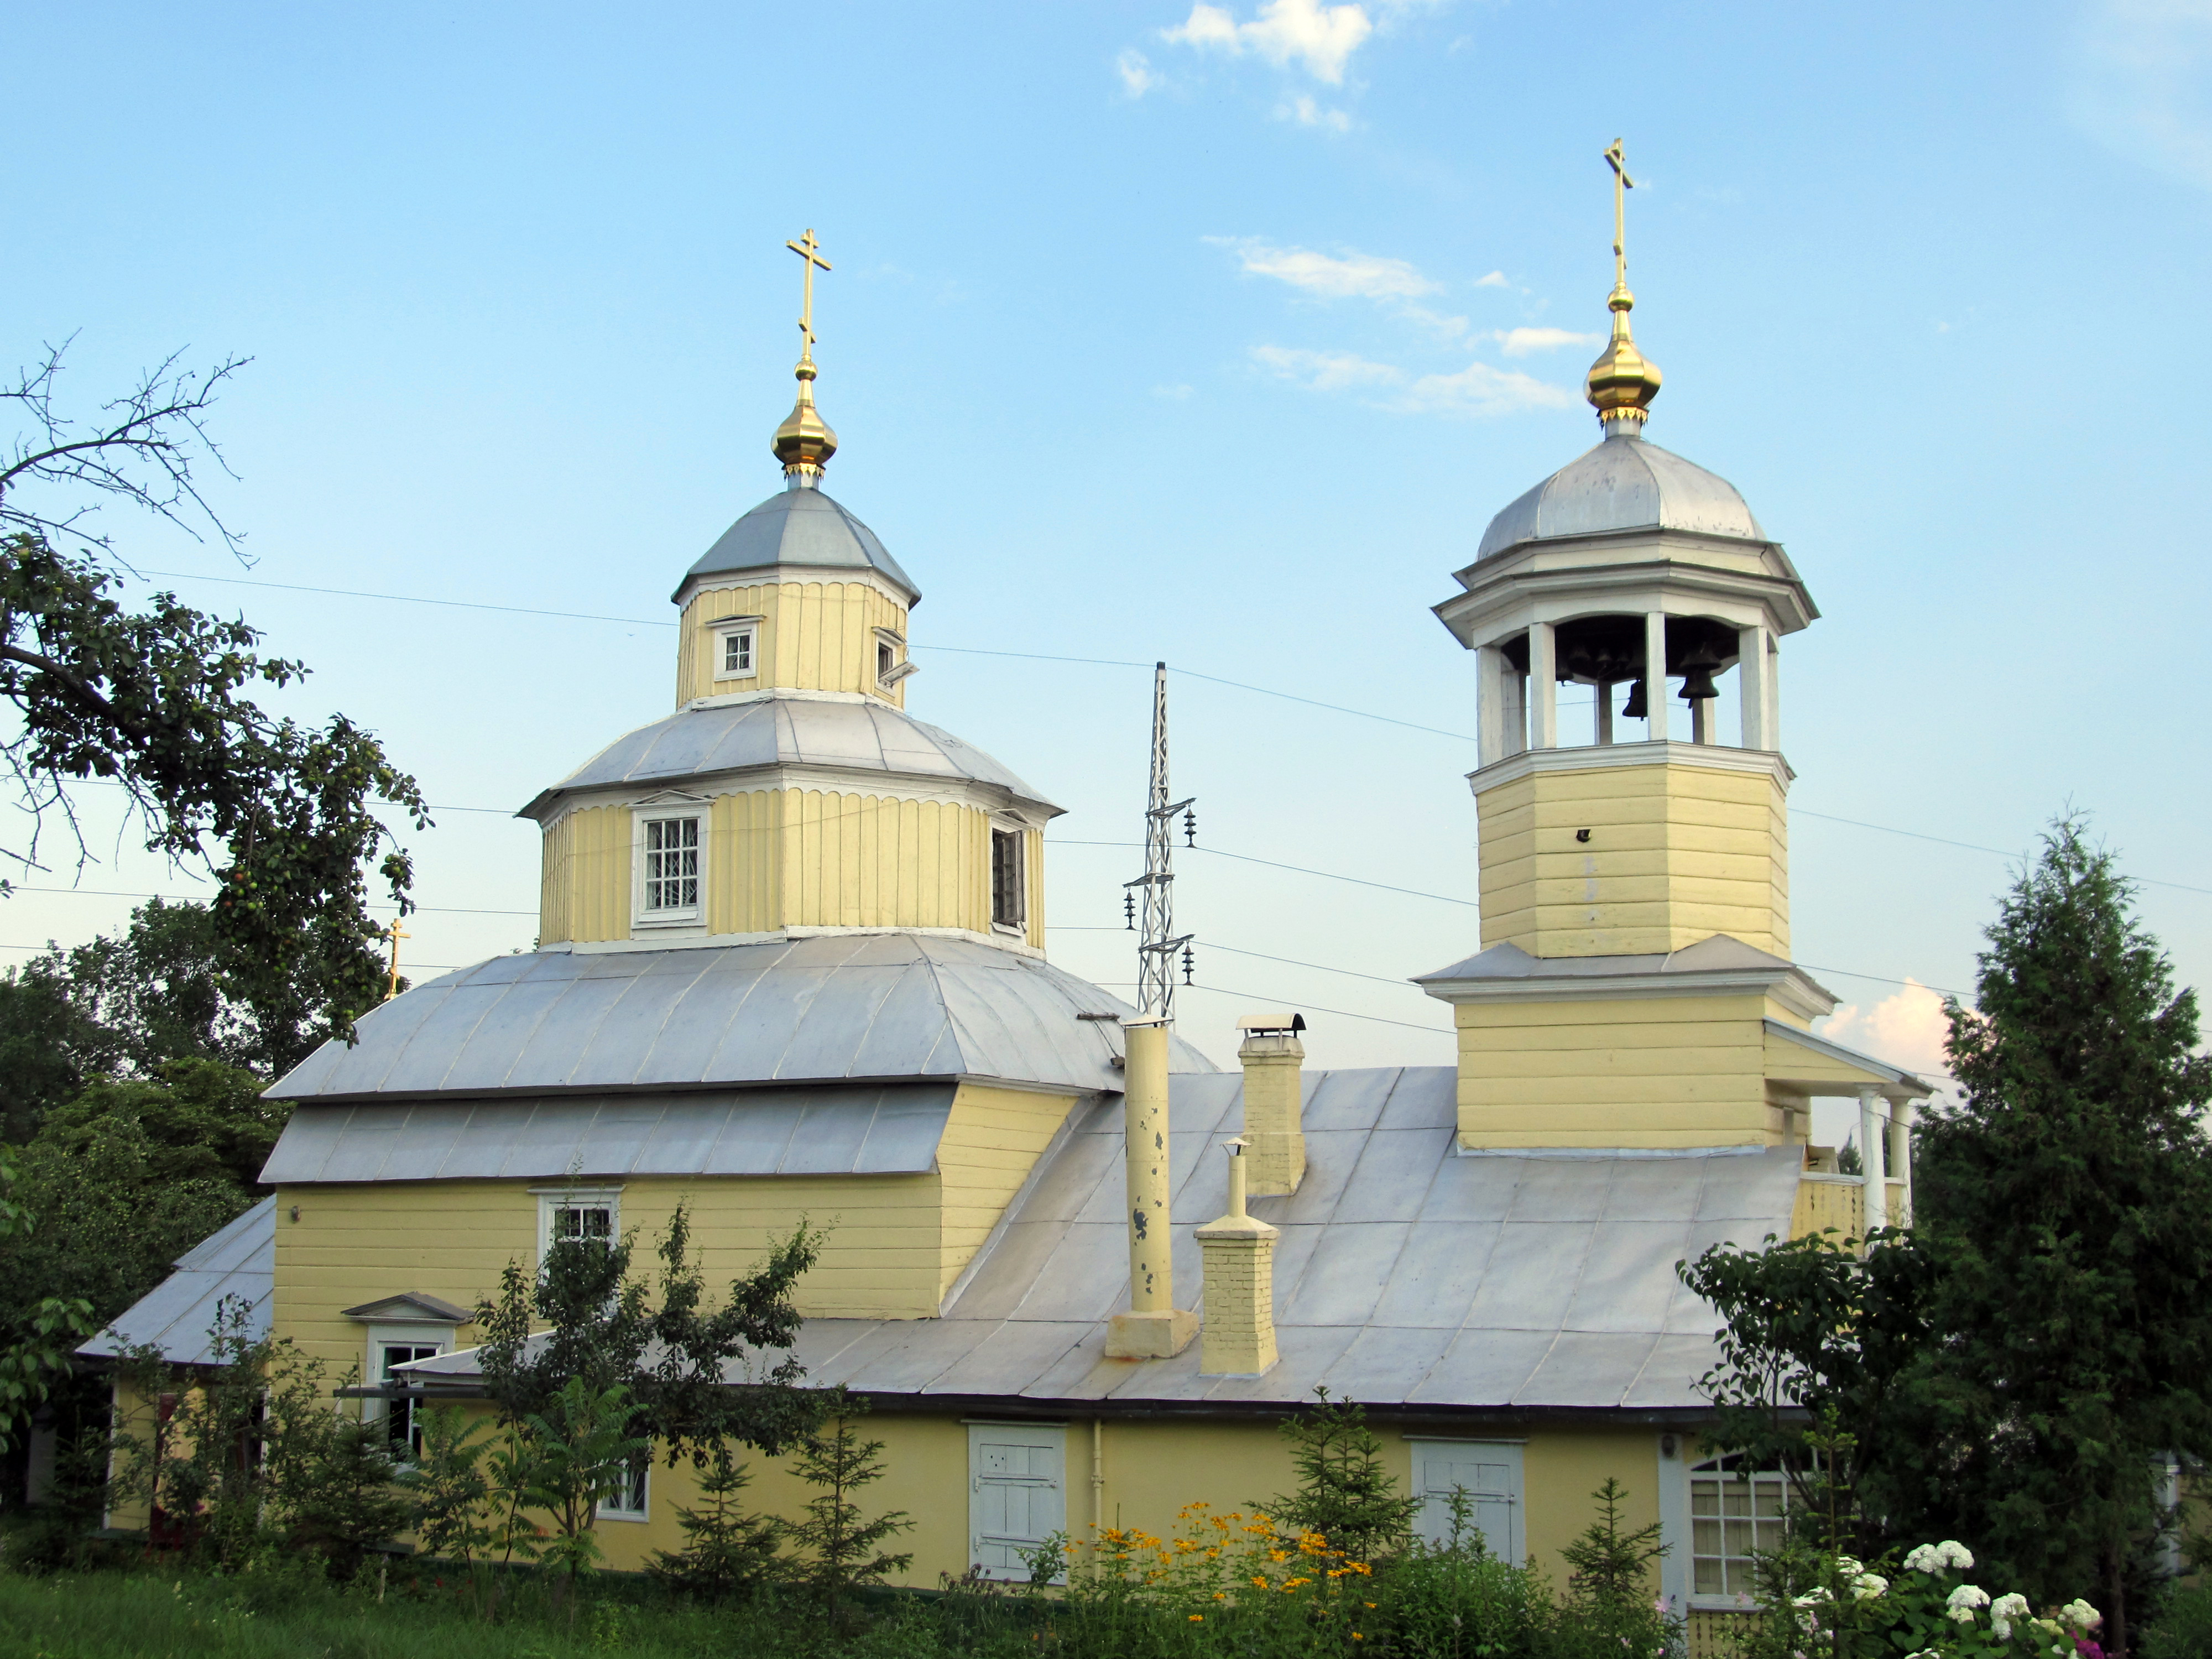 Ильинская церковь (Гомель) &mdash; Википедия